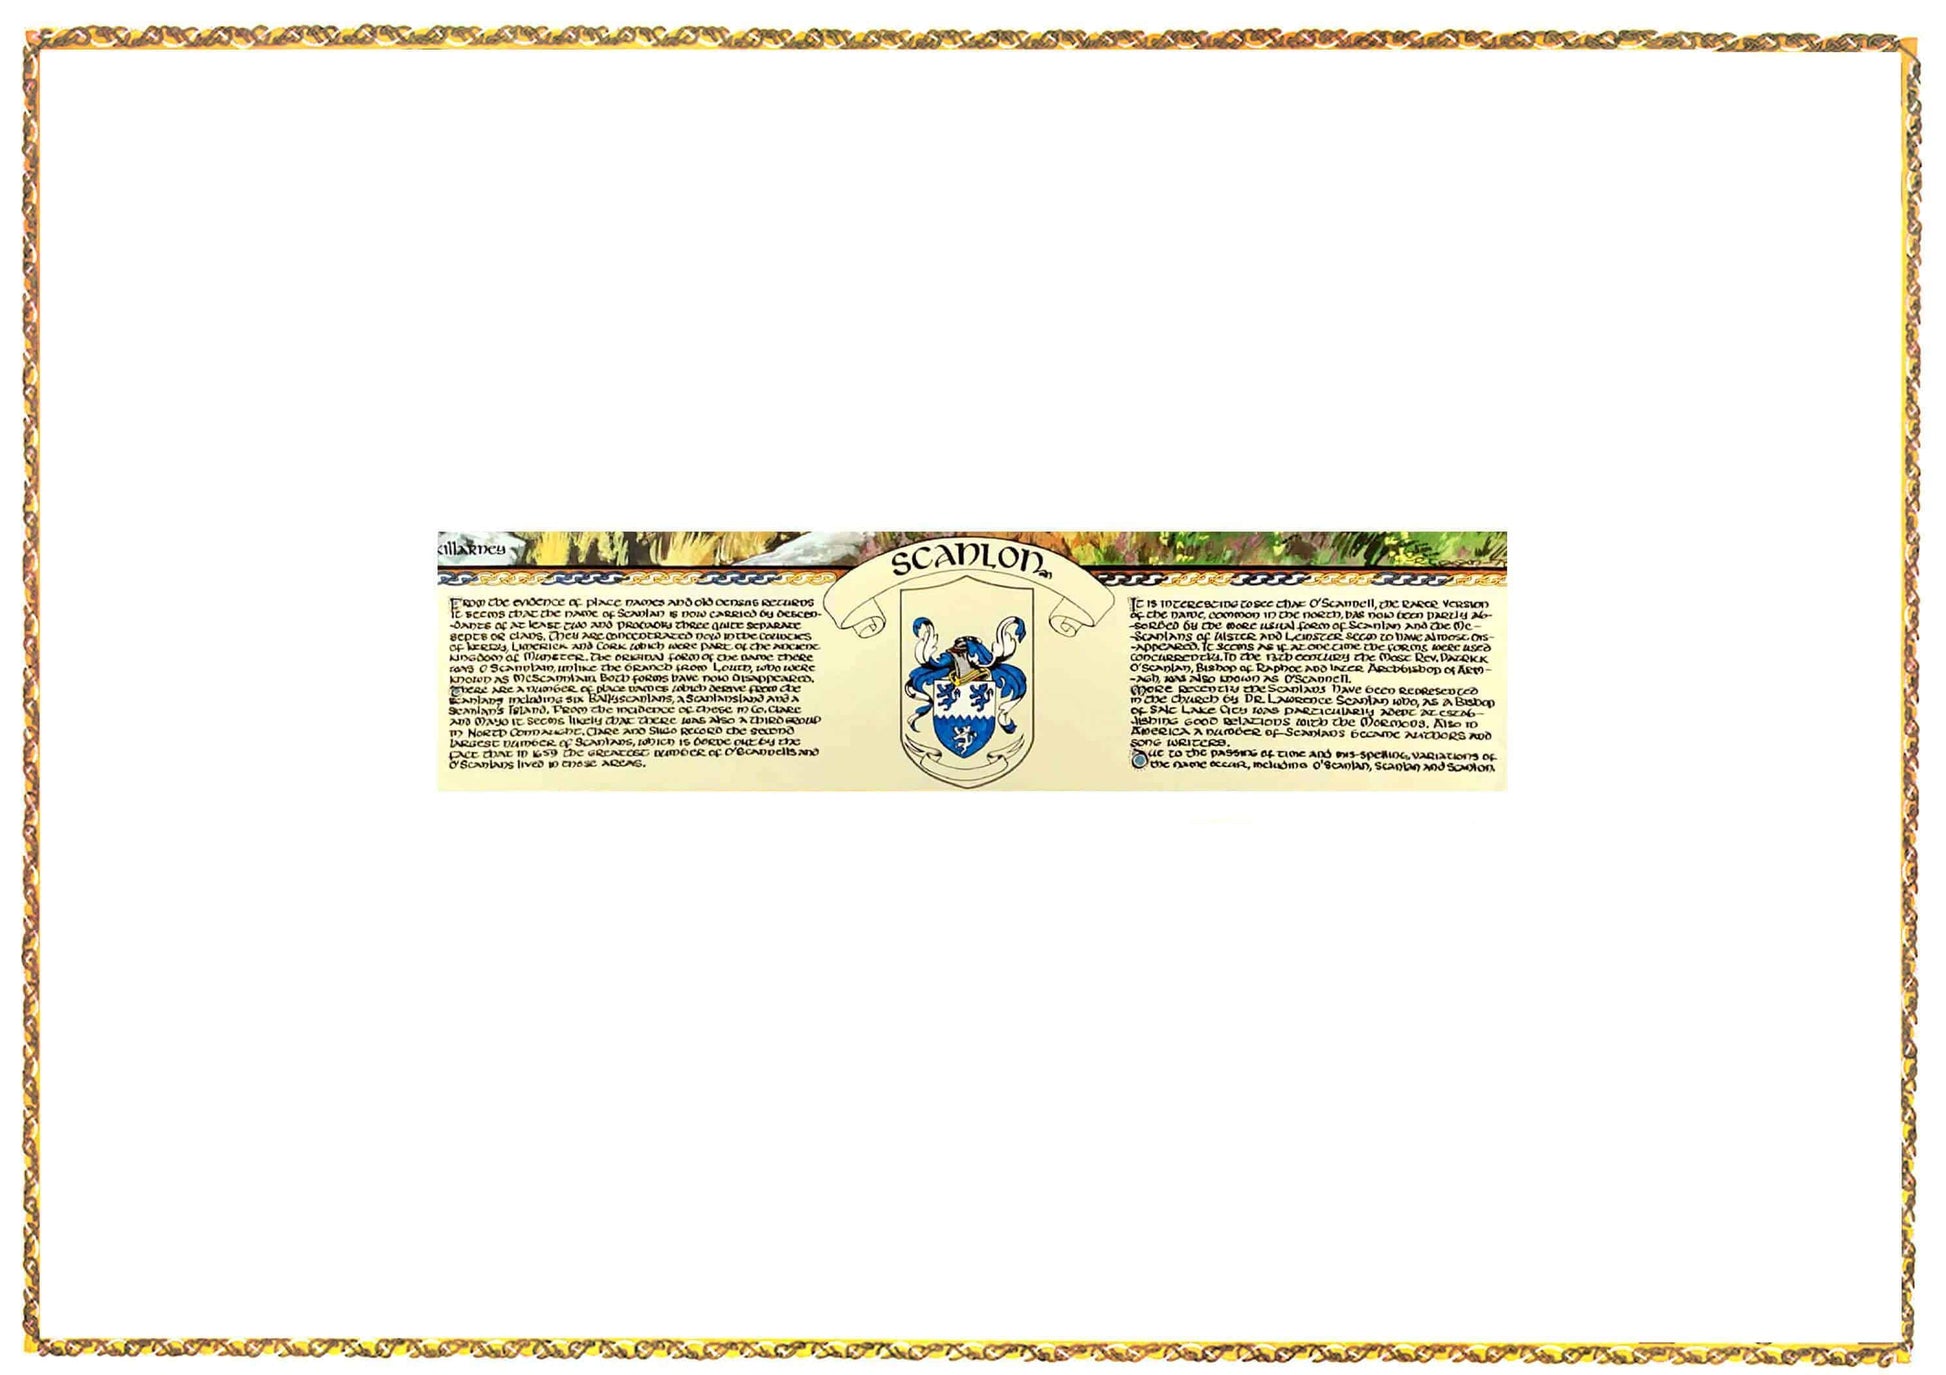 Scanlon Coat of Arms Parchment